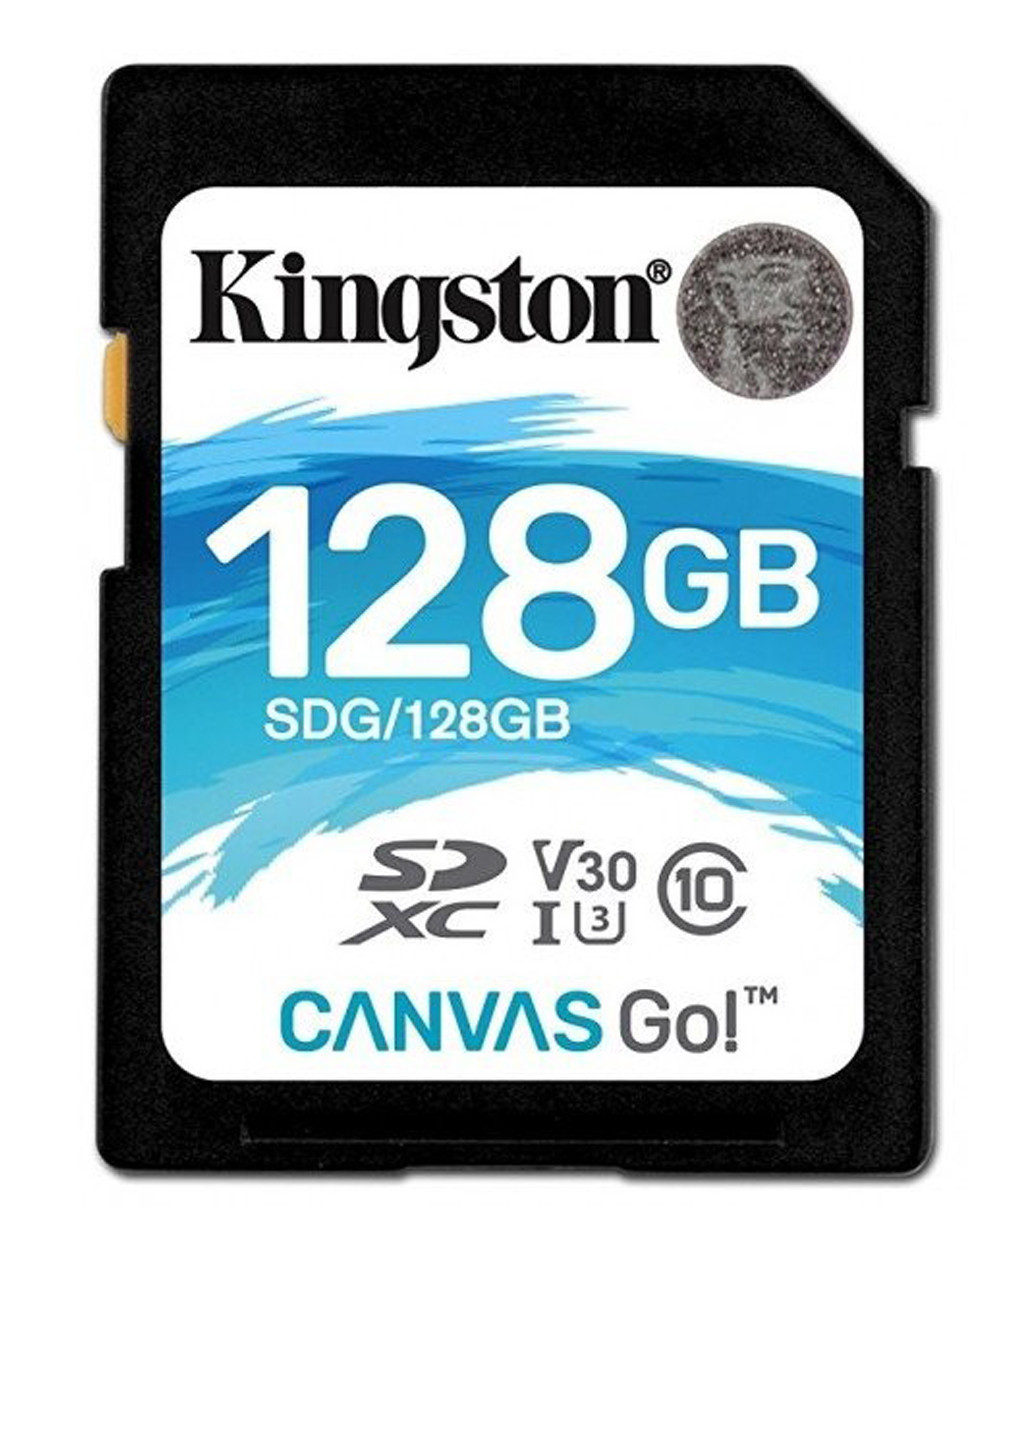 Карта памяти SDXC 128GB Canvas Go! C10 UHS-I U3 (SDG/128GB) Kingston карта памяти kingston sdxc 128gb canvas go! c10 uhs-i u3 (sdg/128gb) (135316880)